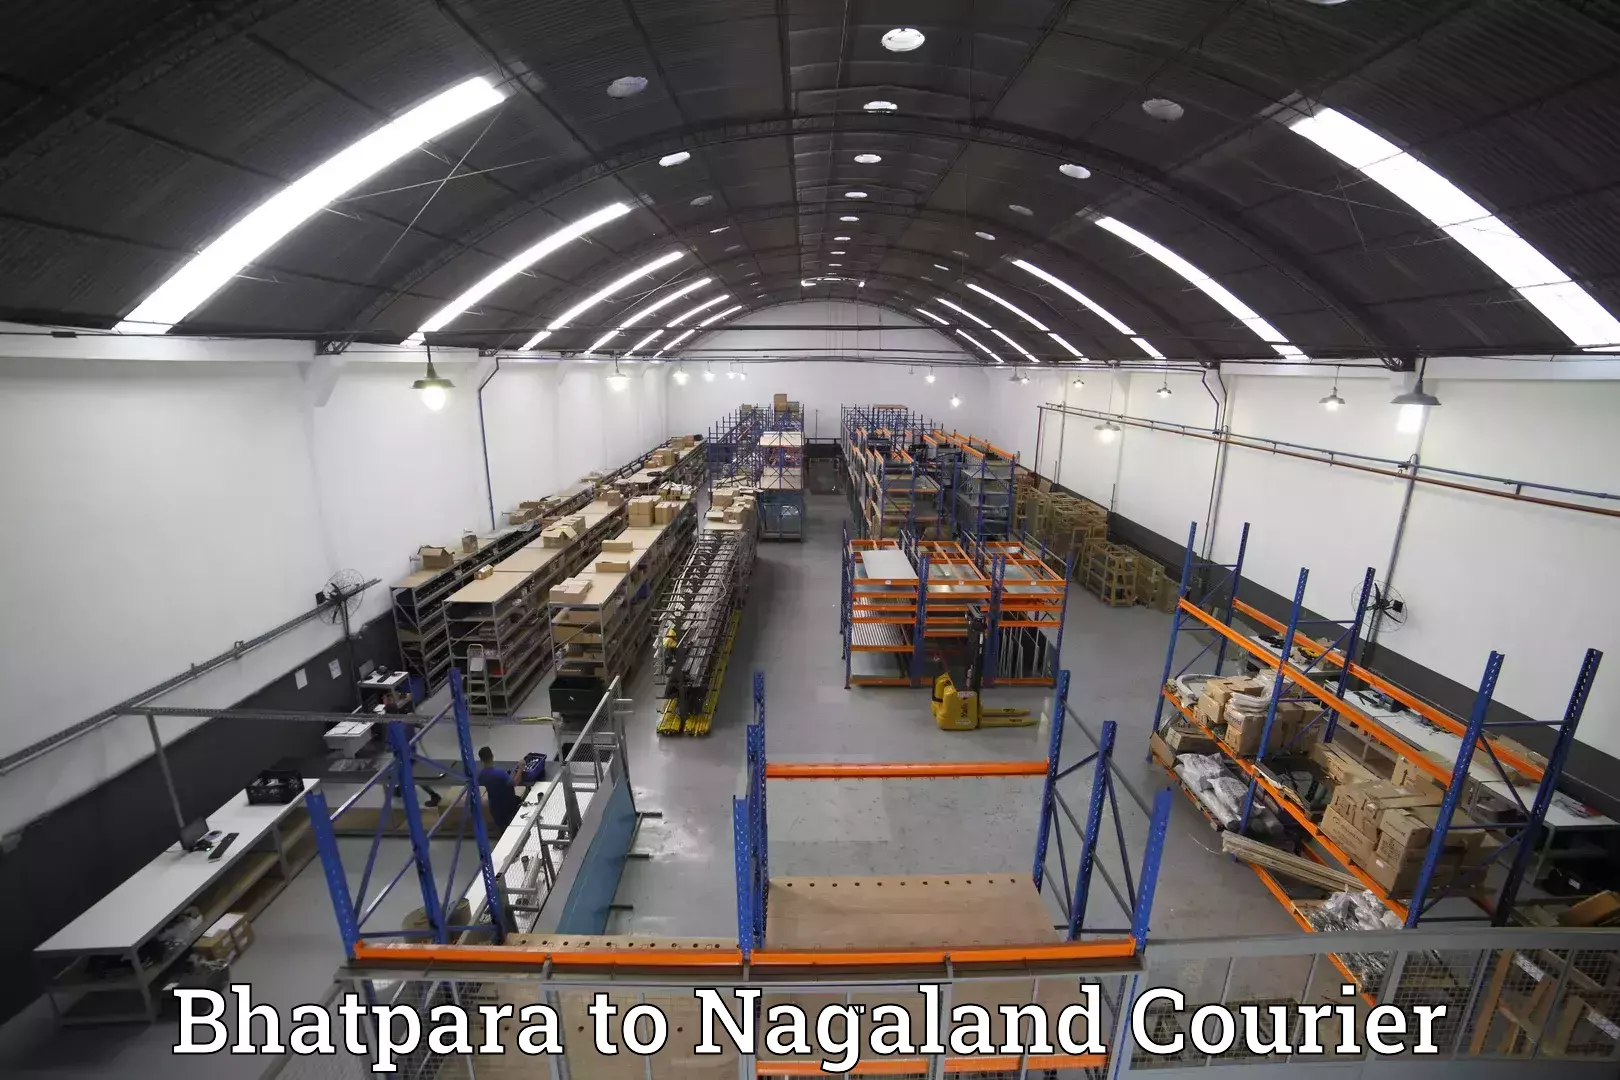 Luggage delivery optimization Bhatpara to Nagaland